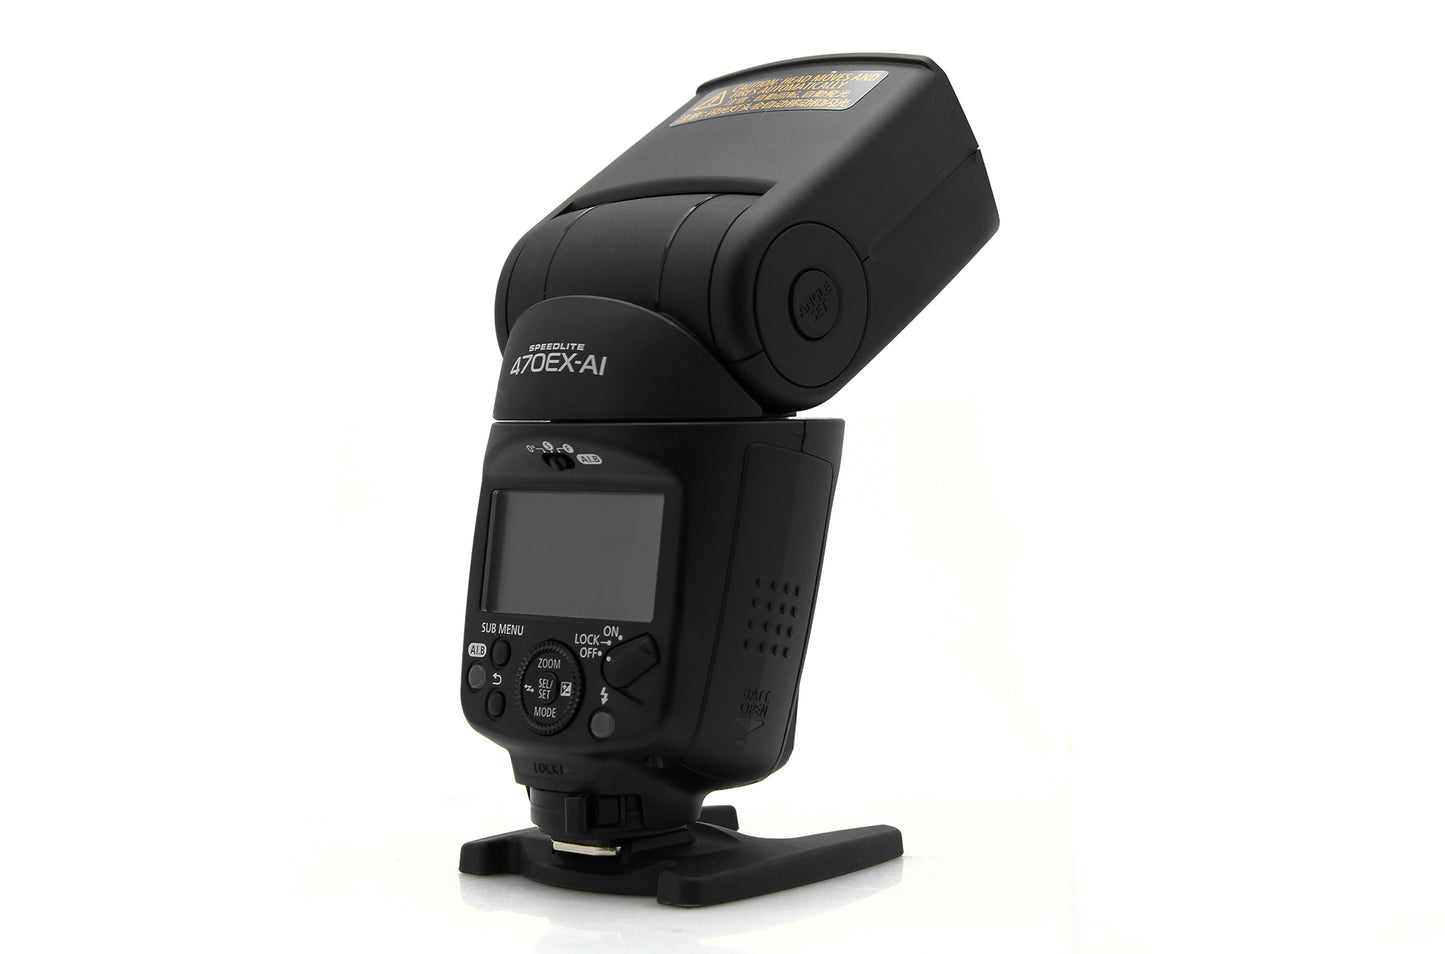 Used Canon 470EX-AI Speedlite Flash